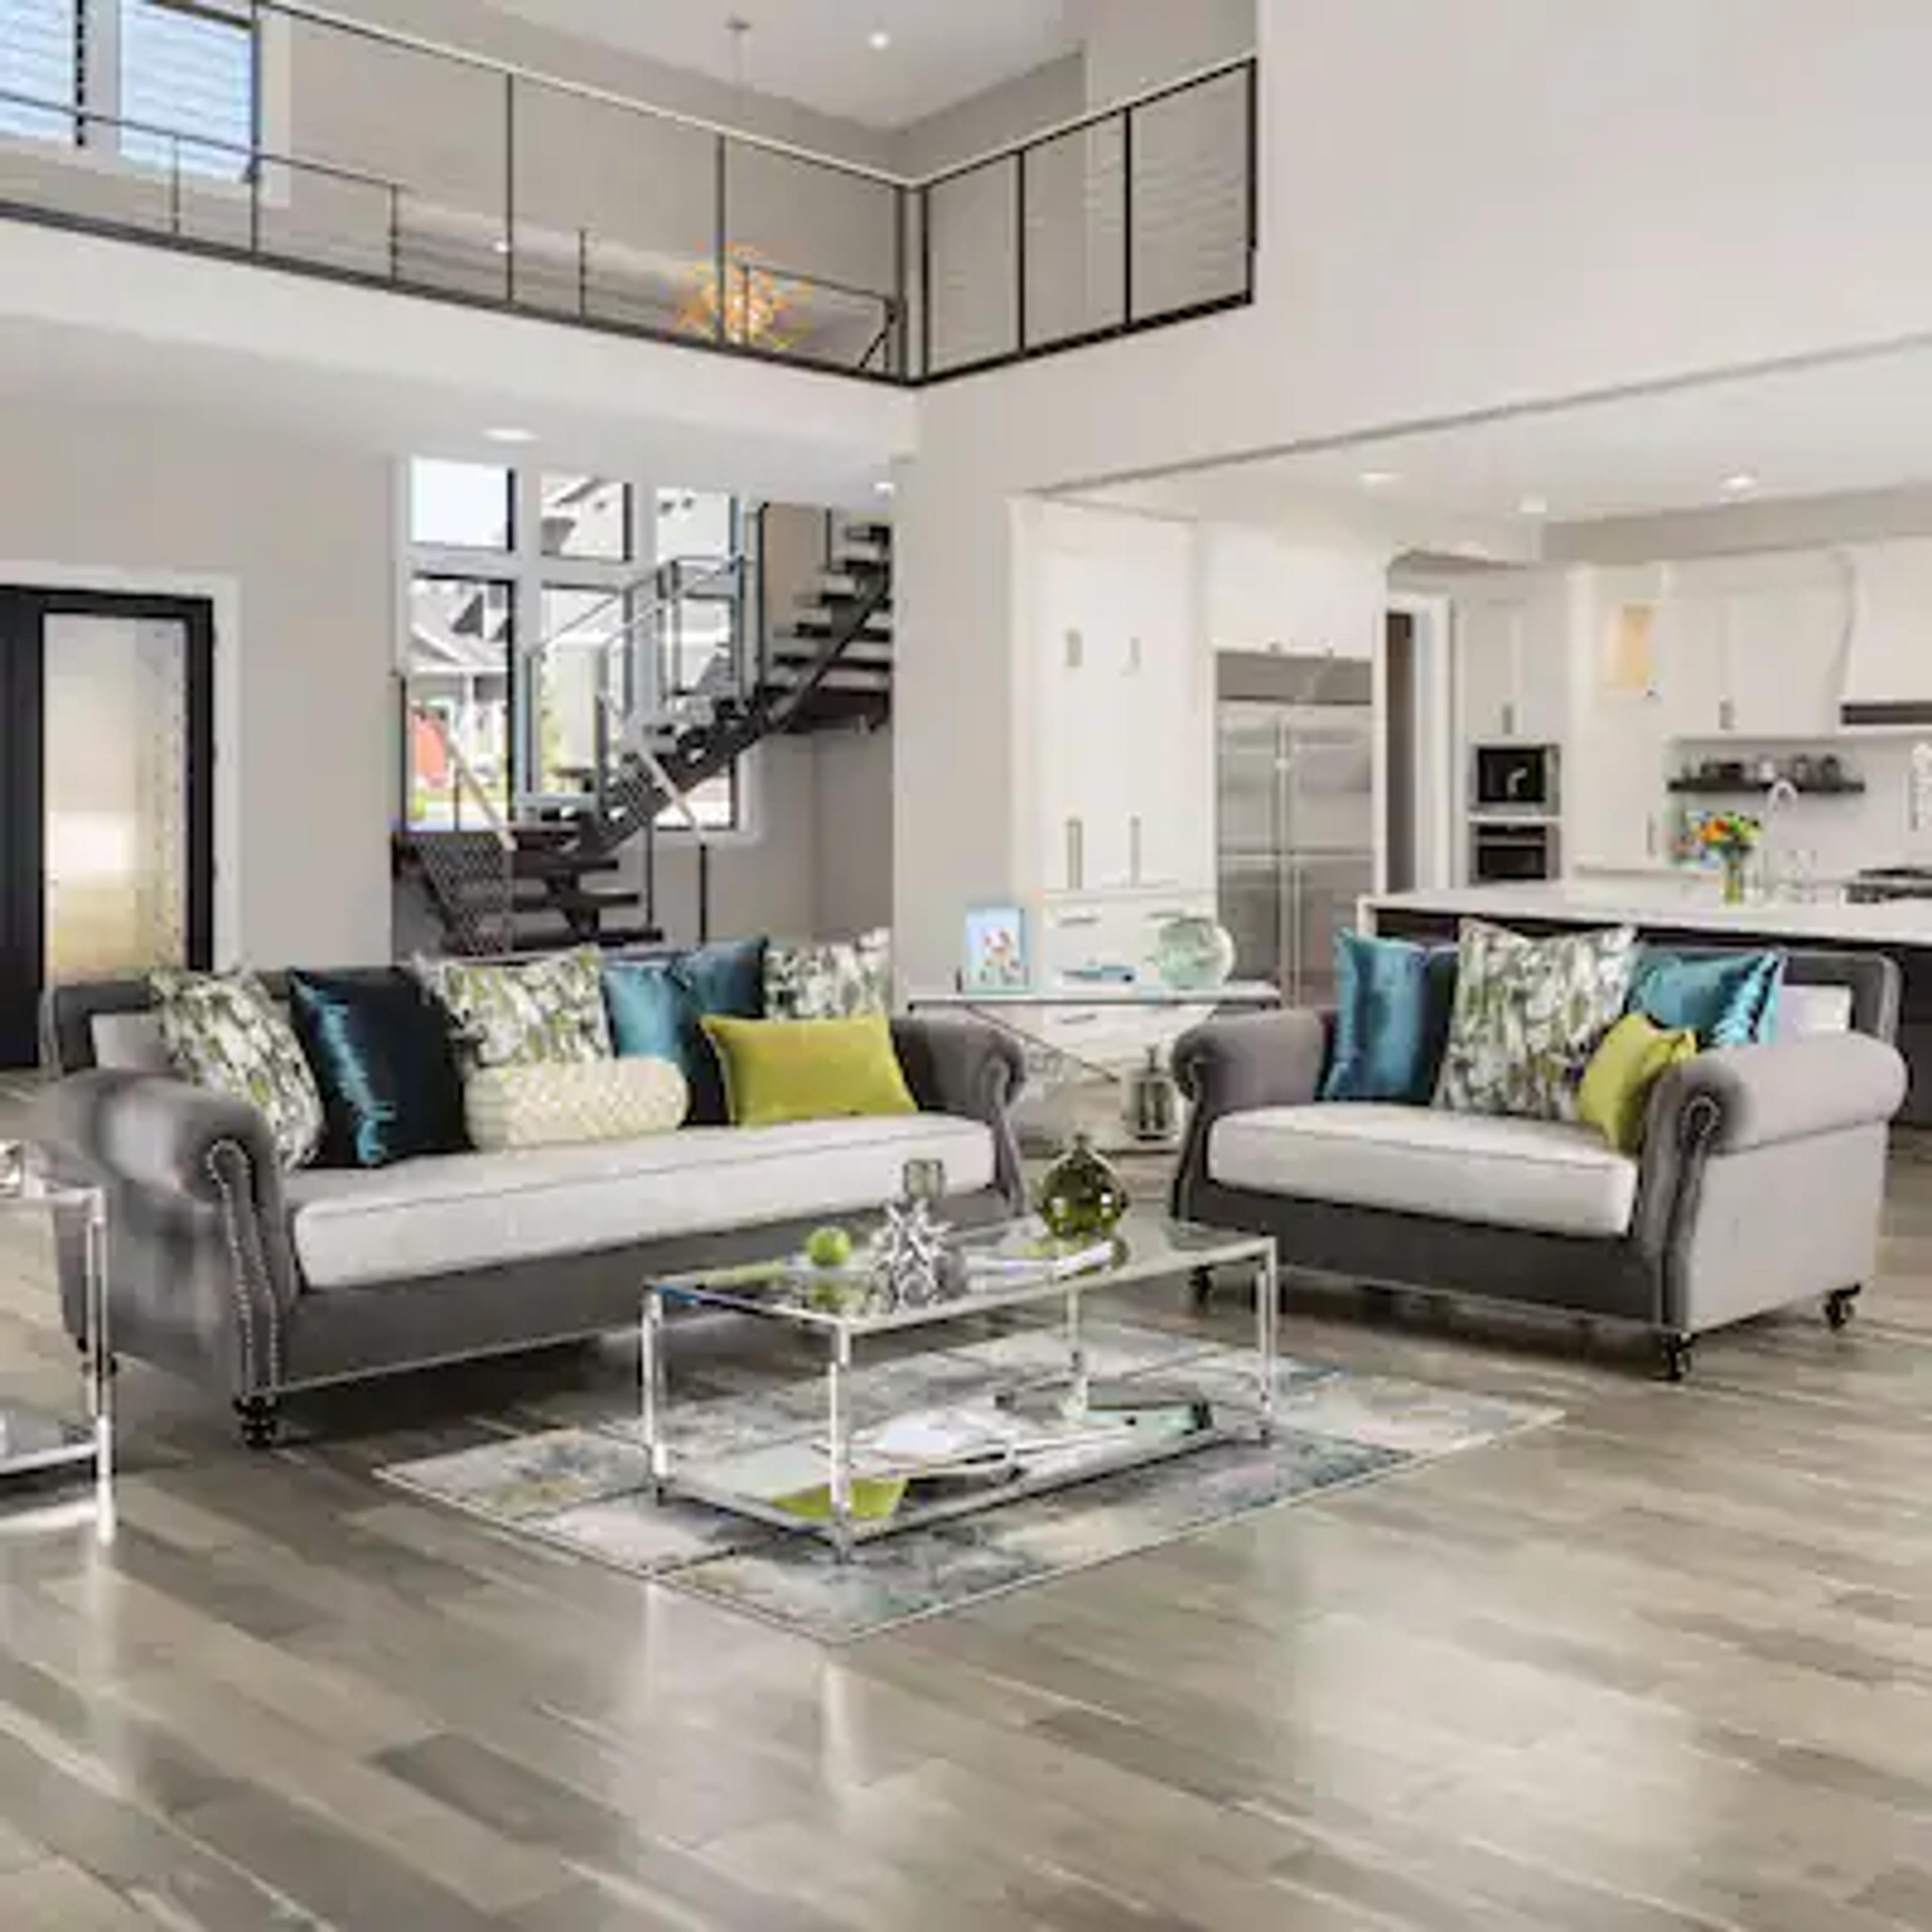 Buy Sofa Living Room Furniture Sets Online at Overstock | Our Best Living Room Furniture Deals